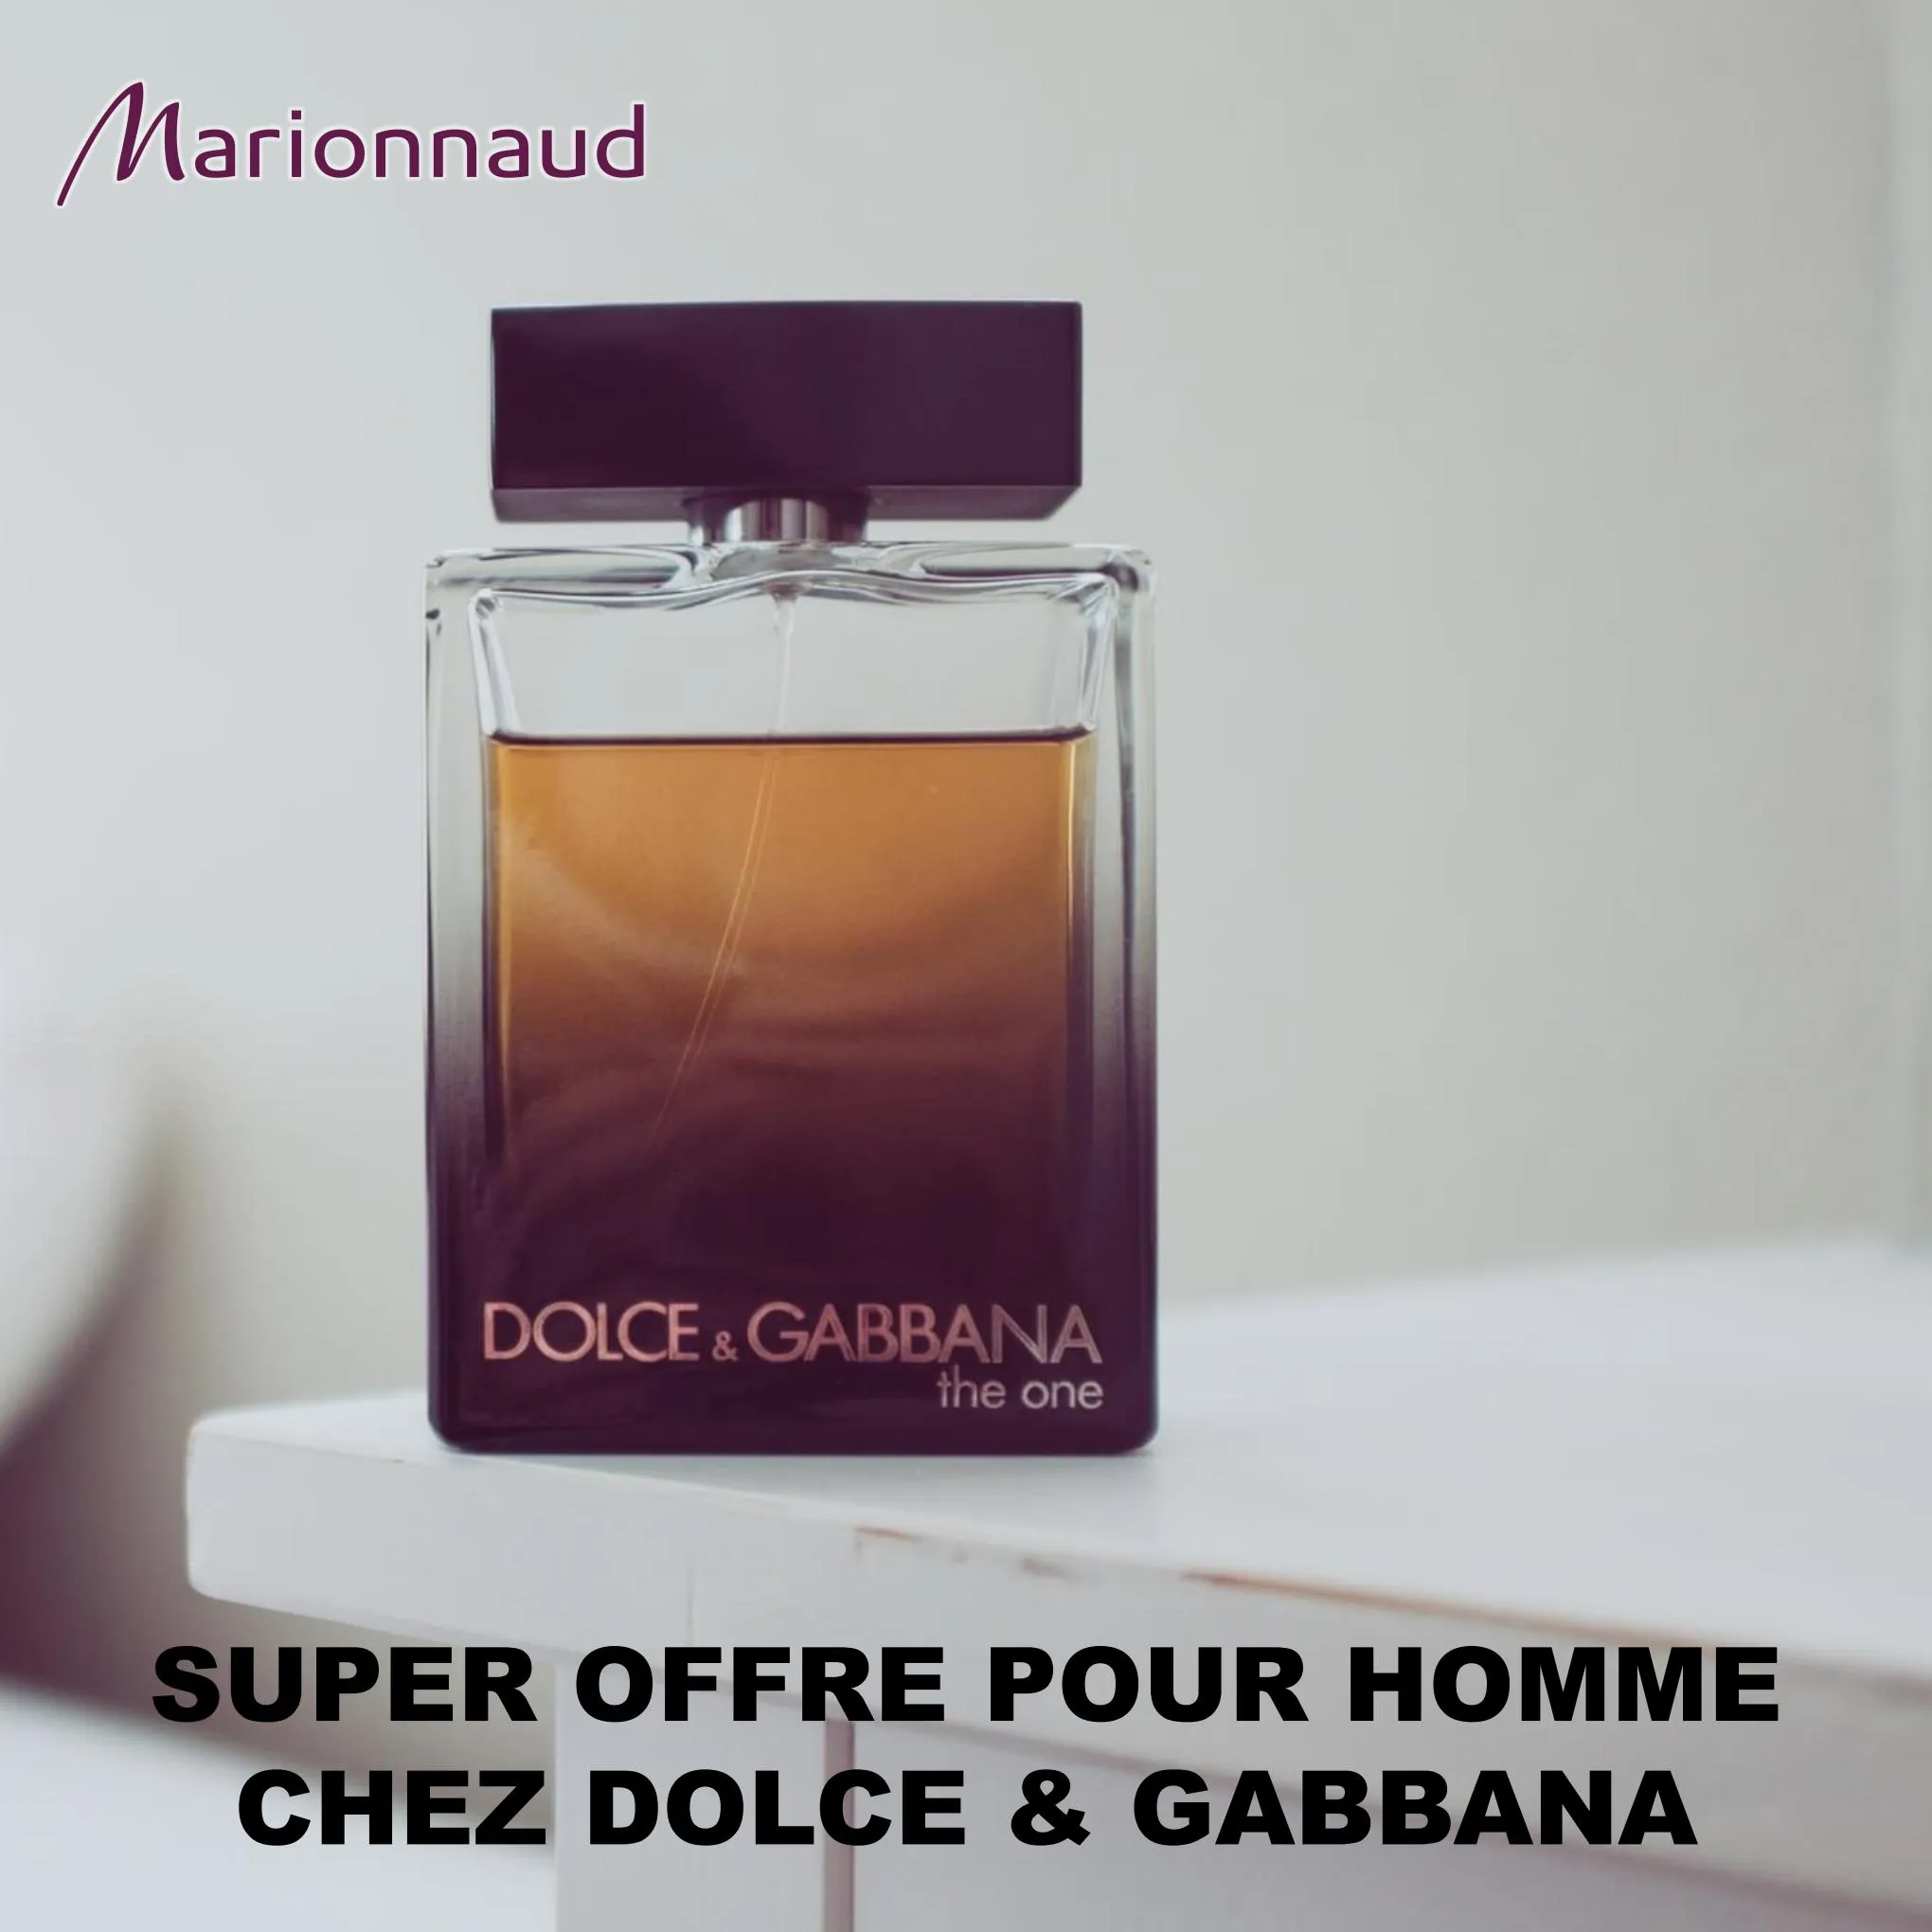 Catalogue Super offre pour homme chez Dolce & Gabbana, page 00001